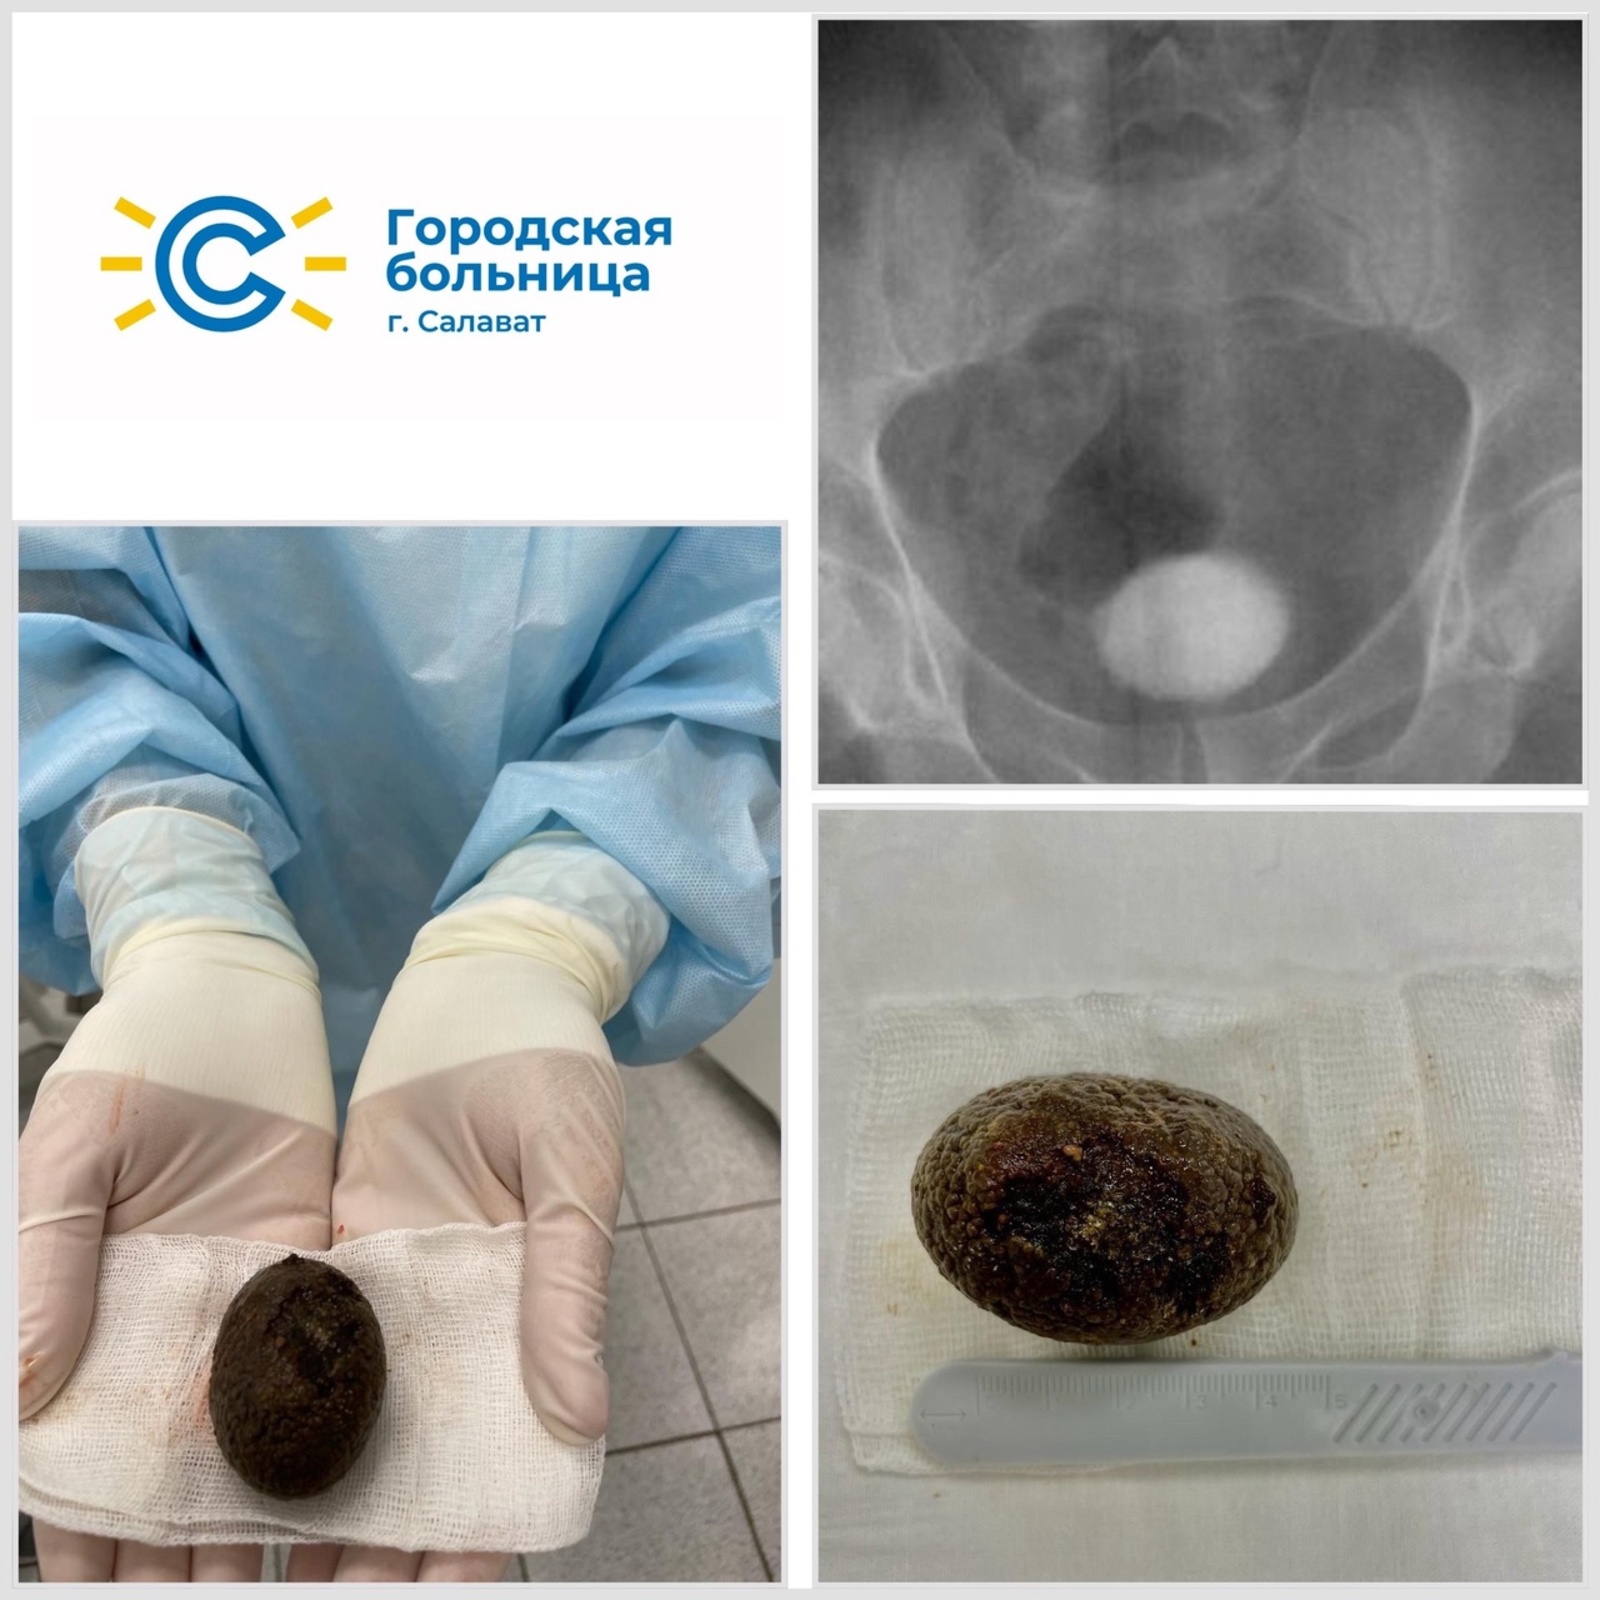 В Башкирии врачи успешно удалили из мочевого пузыря камень размером с куриное яйцо